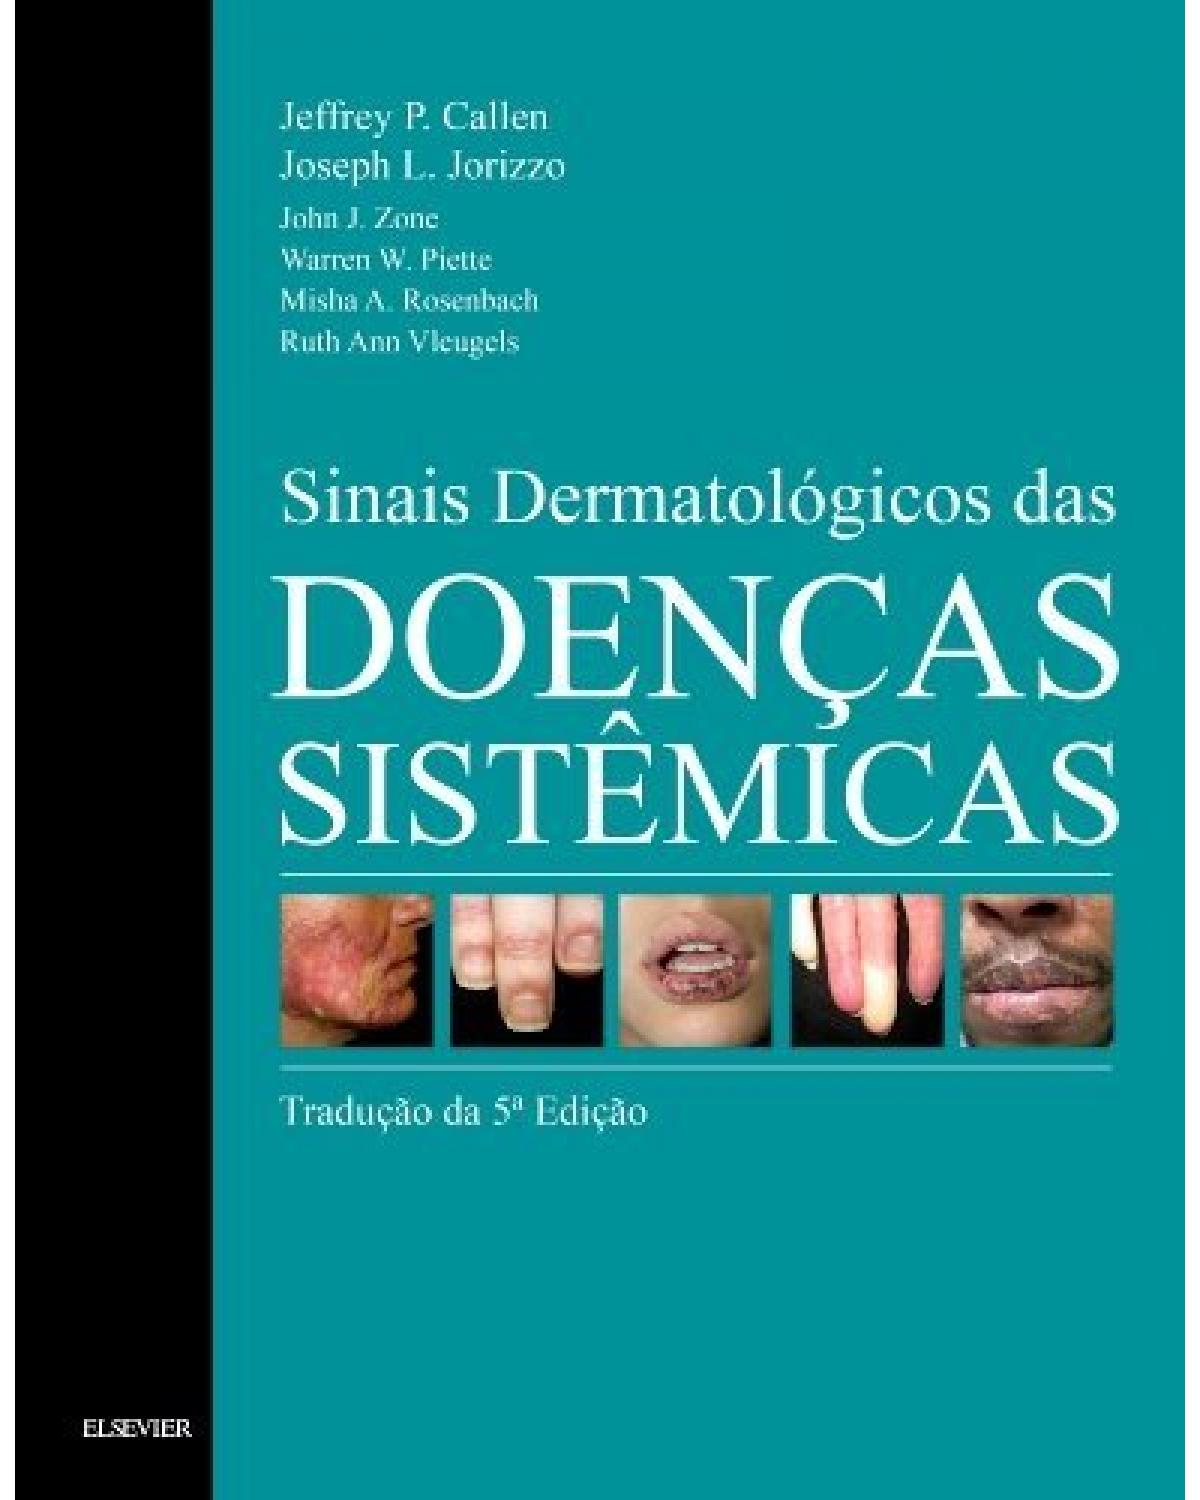 Sinais dermatológicos das doenças sistêmicas - 5ª Edição | 2018